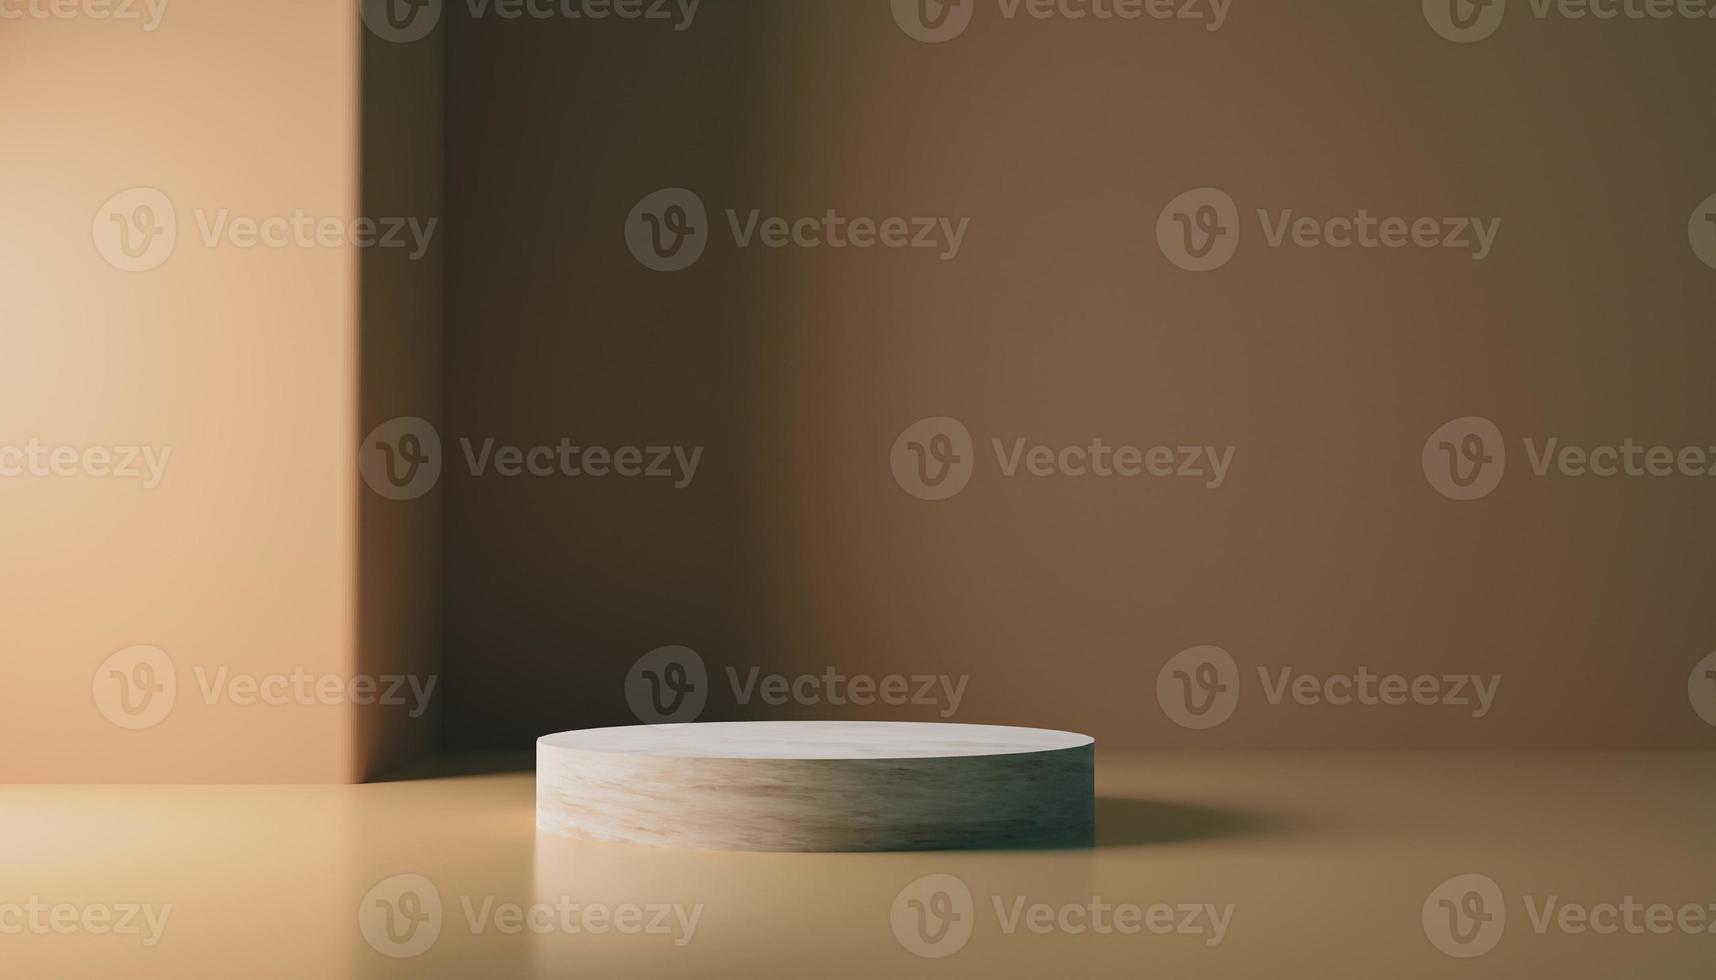 podium d'affichage publicitaire de produit unique de texture de bois naturel abstrait pour les marchandises avec un socle lisse de lumière douce de fond sombre maquette image de rendu 3d. photo